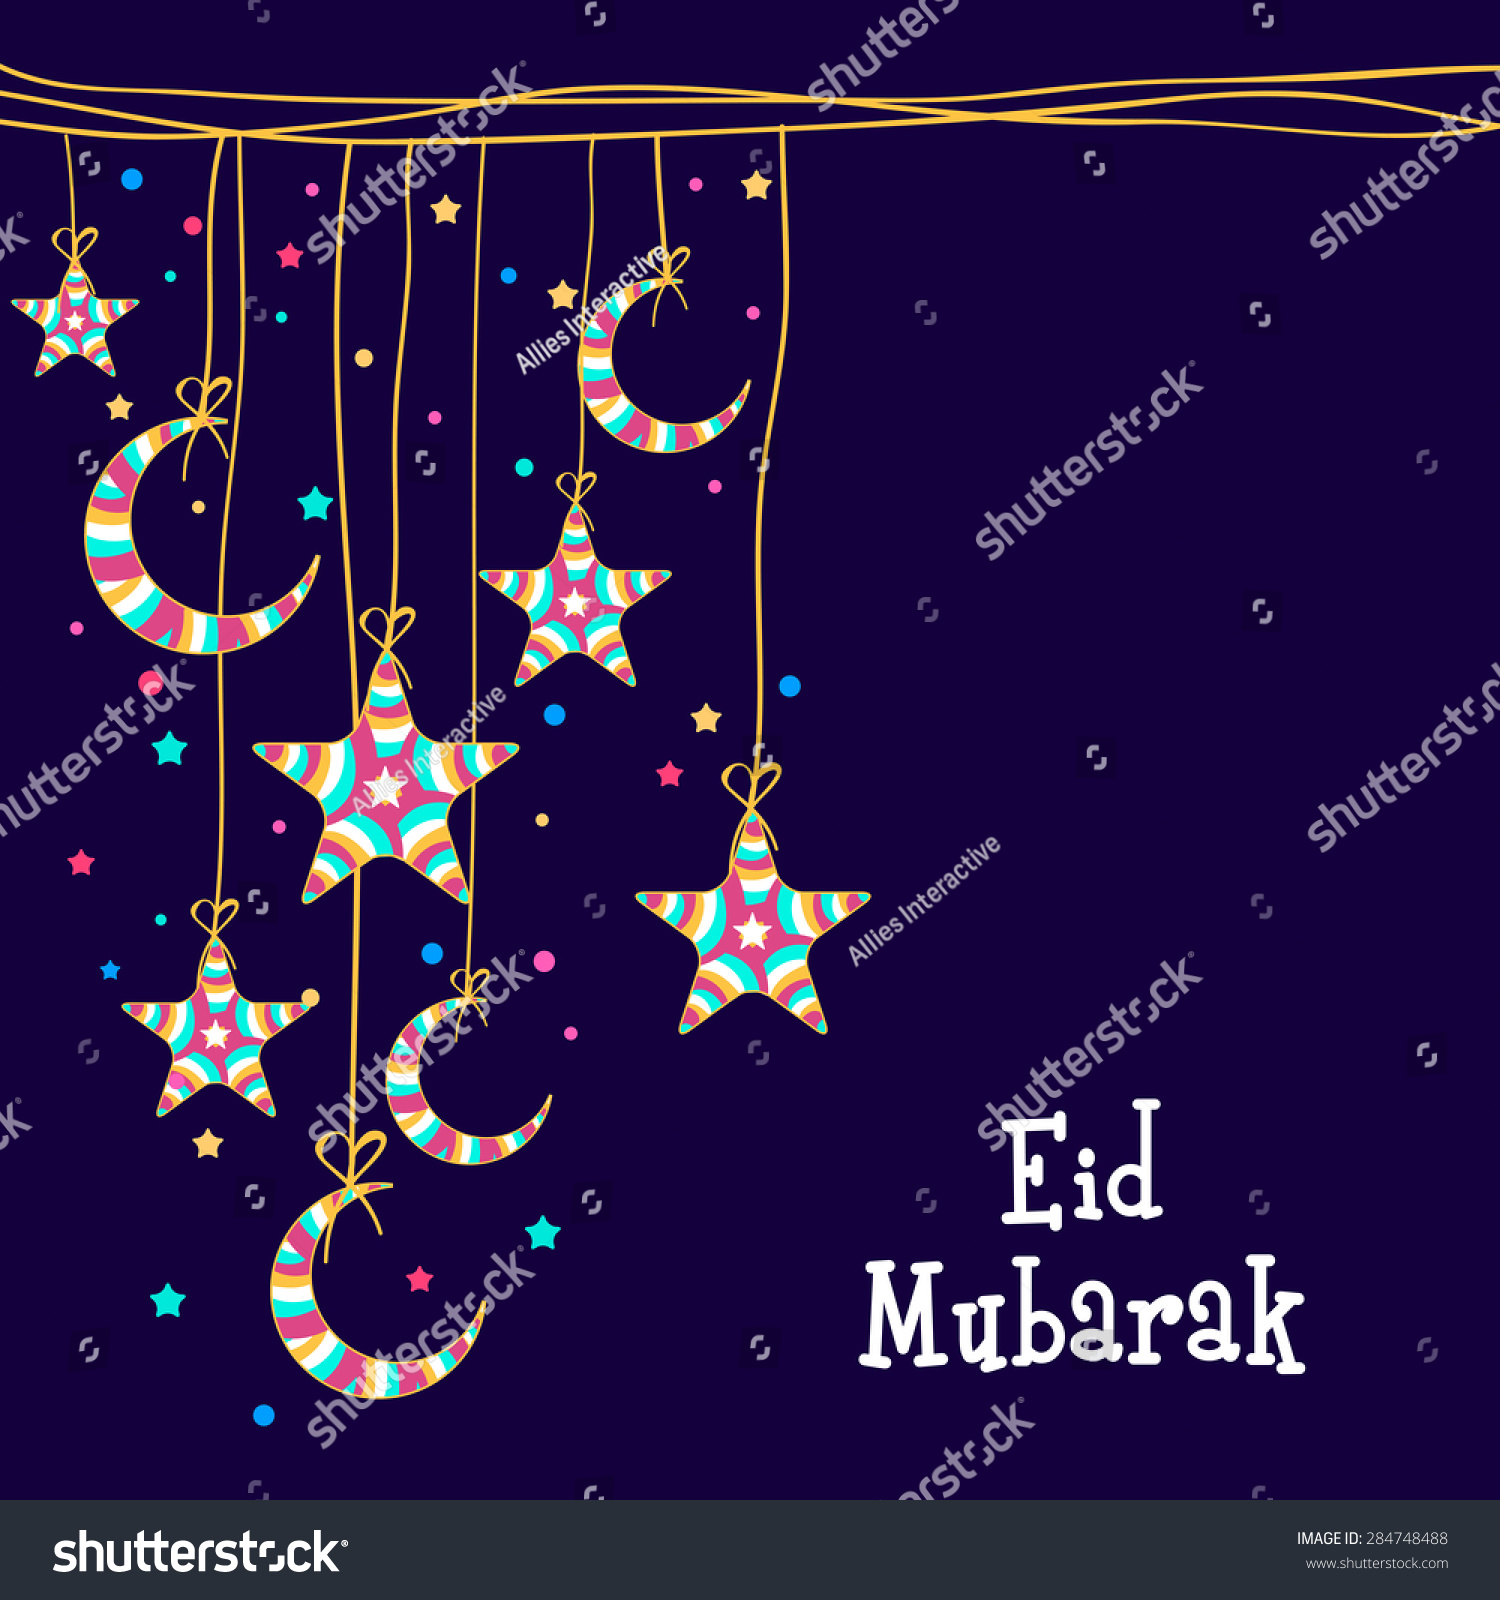 Holidays Of Eid Ul Adha 2019 In Uae - Toast Nuances